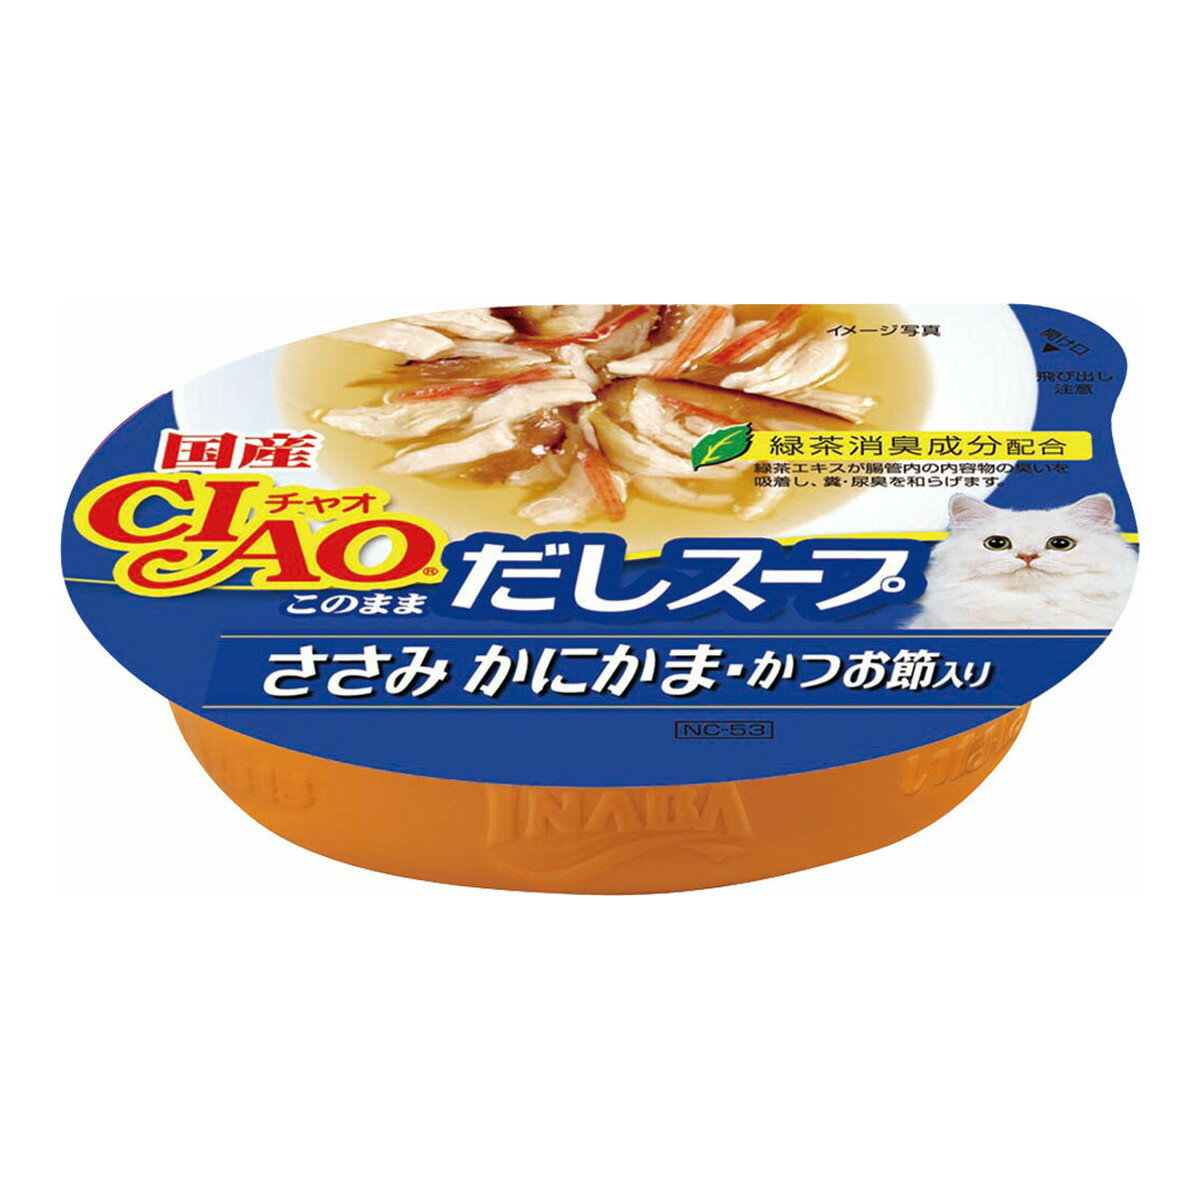 商品名：いなばペットフード いなば チャオ CIAO このまま だしスープ ささみ かにかま・かつお節入り 60g内容量：60gJANコード：4901133180521発売元、製造元、輸入元又は販売元：いなばペットフード原産国：日本商品番号...